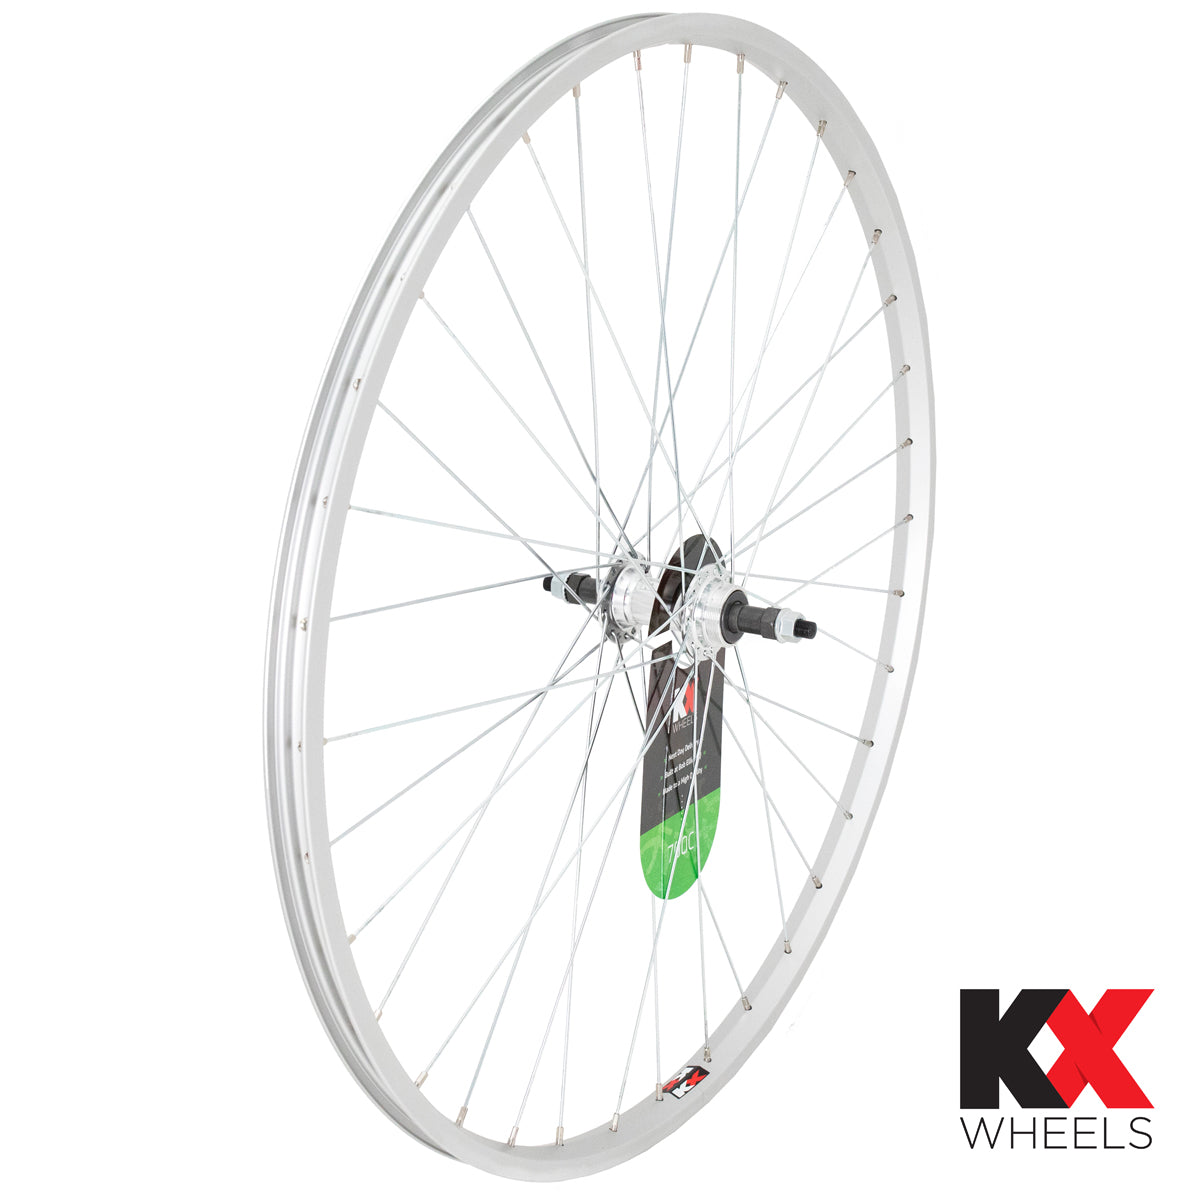 KX Wheels Single Wall Solid Axle Screw On 700c Rear Bike Wheel Silver